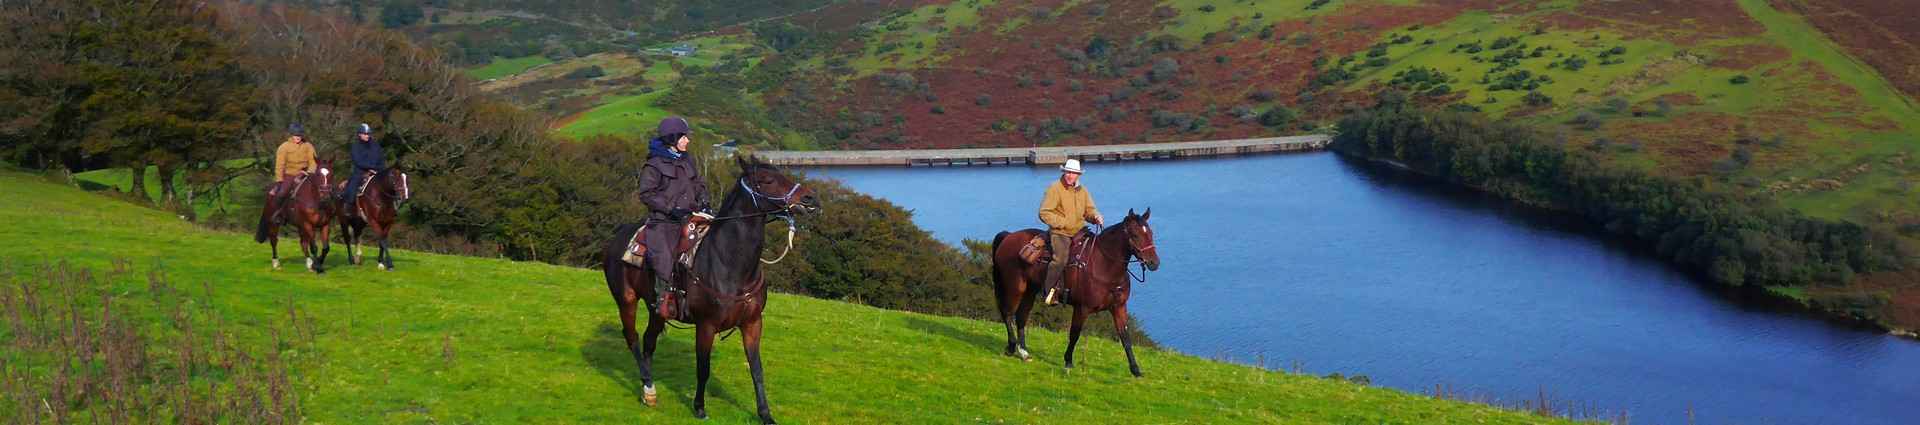 Voyages et randonnées à cheval en Angleterre 